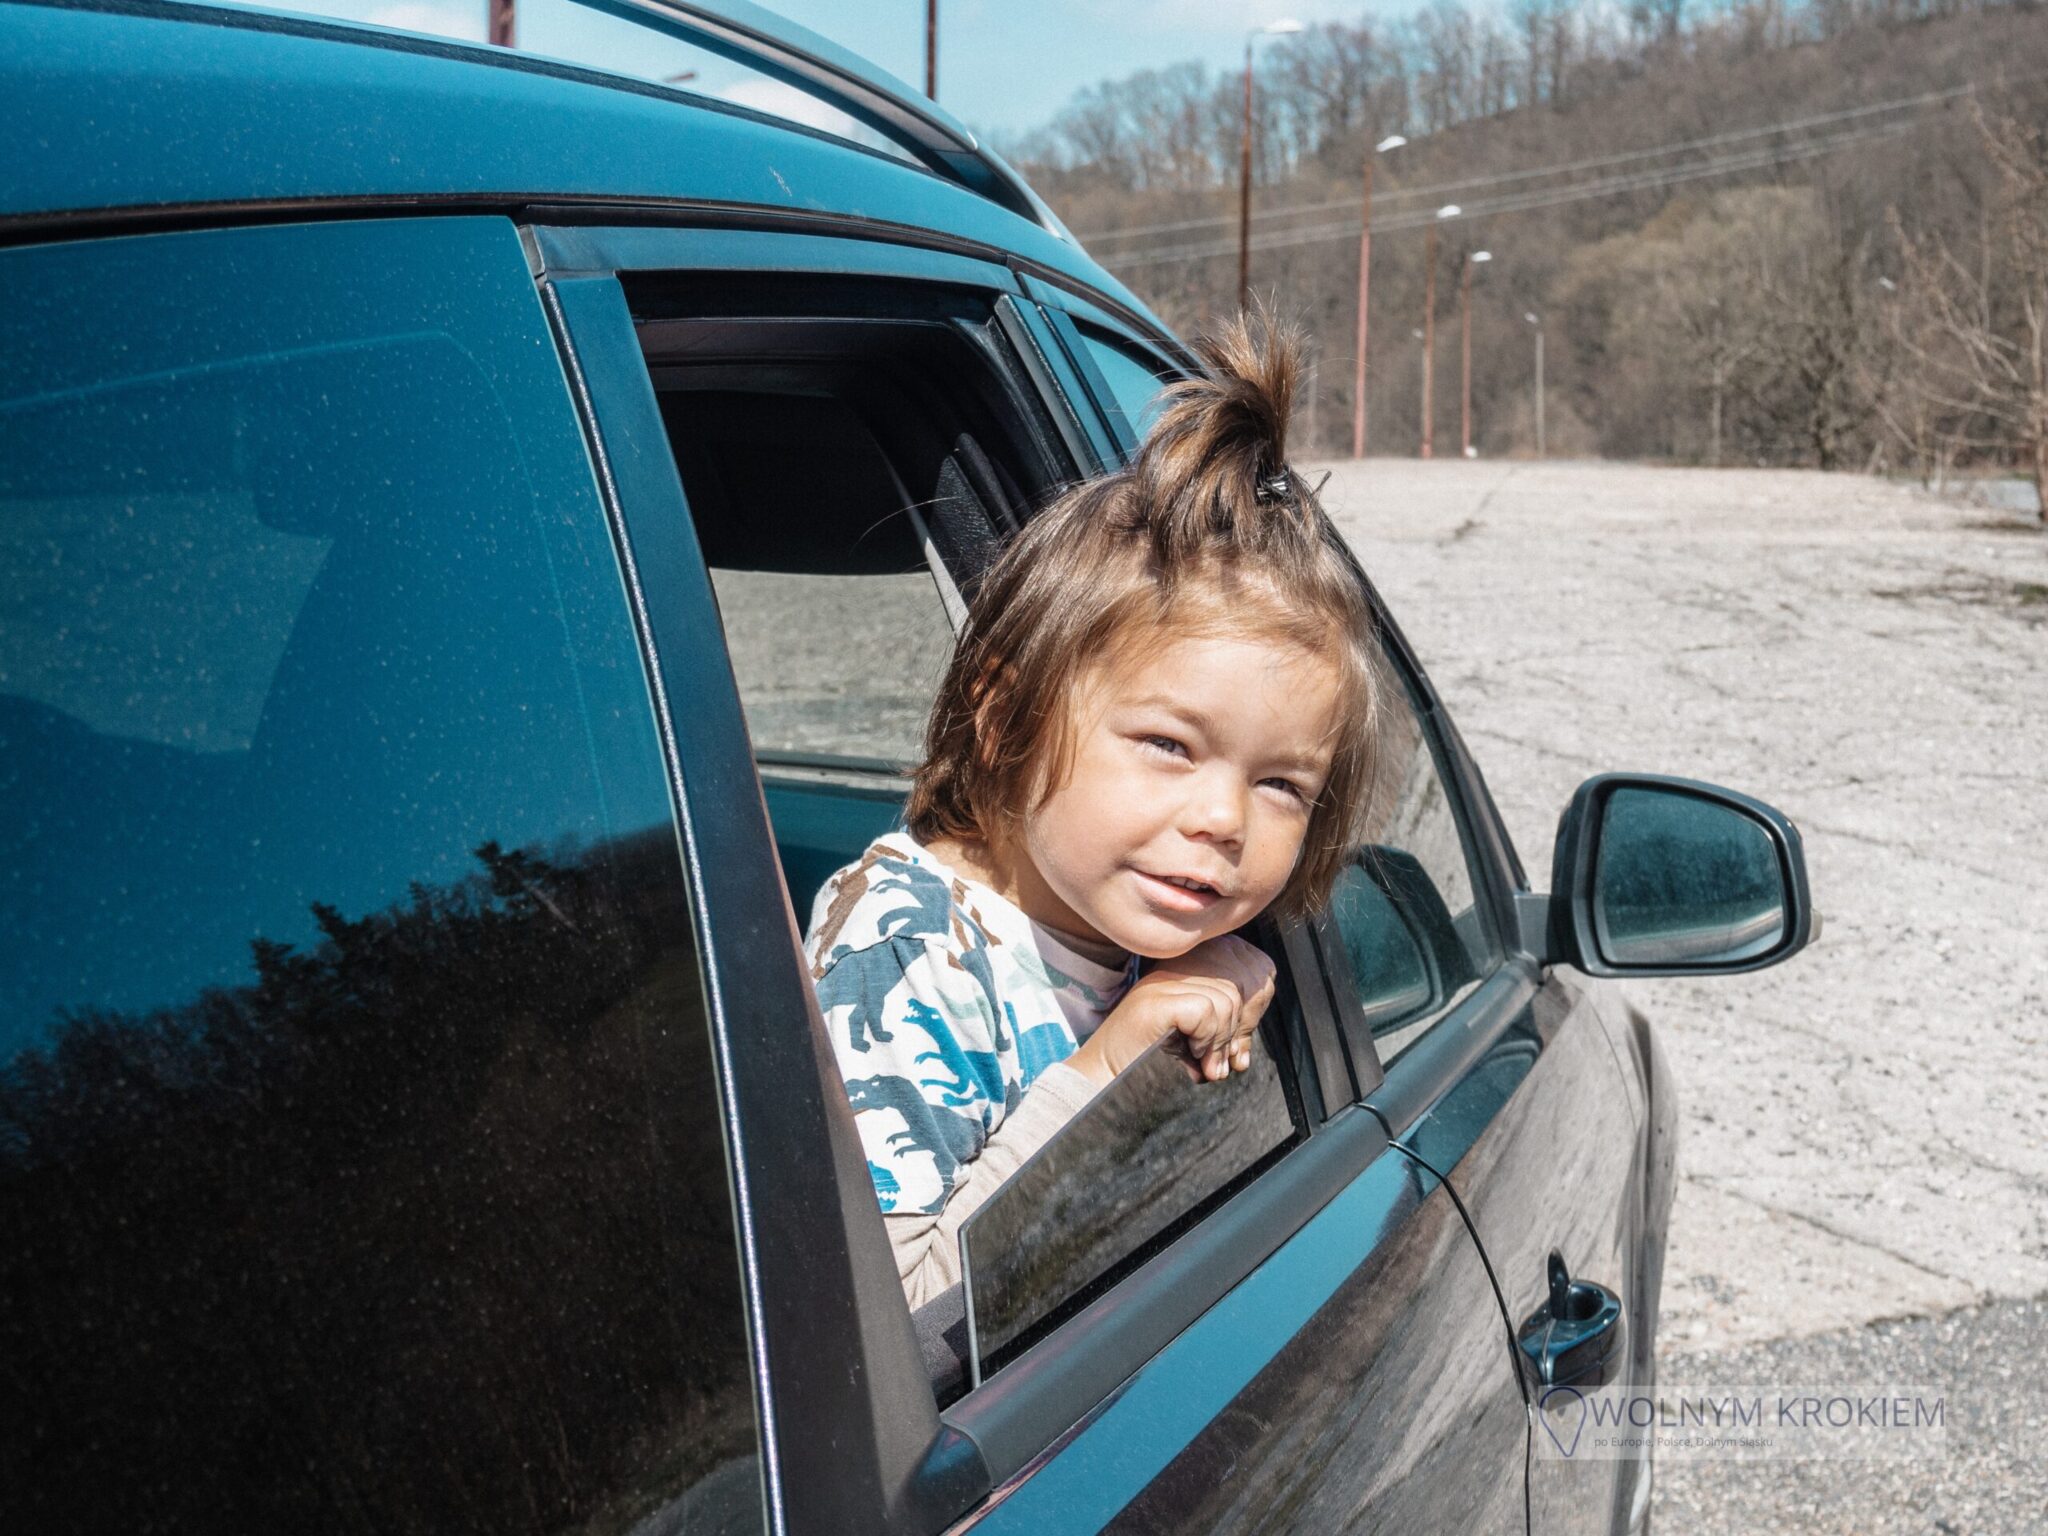 Jak zapewnić dziecku bezpieczeństwo w trakcie podróży samochodem - poradnik dla rodziców z maluchami